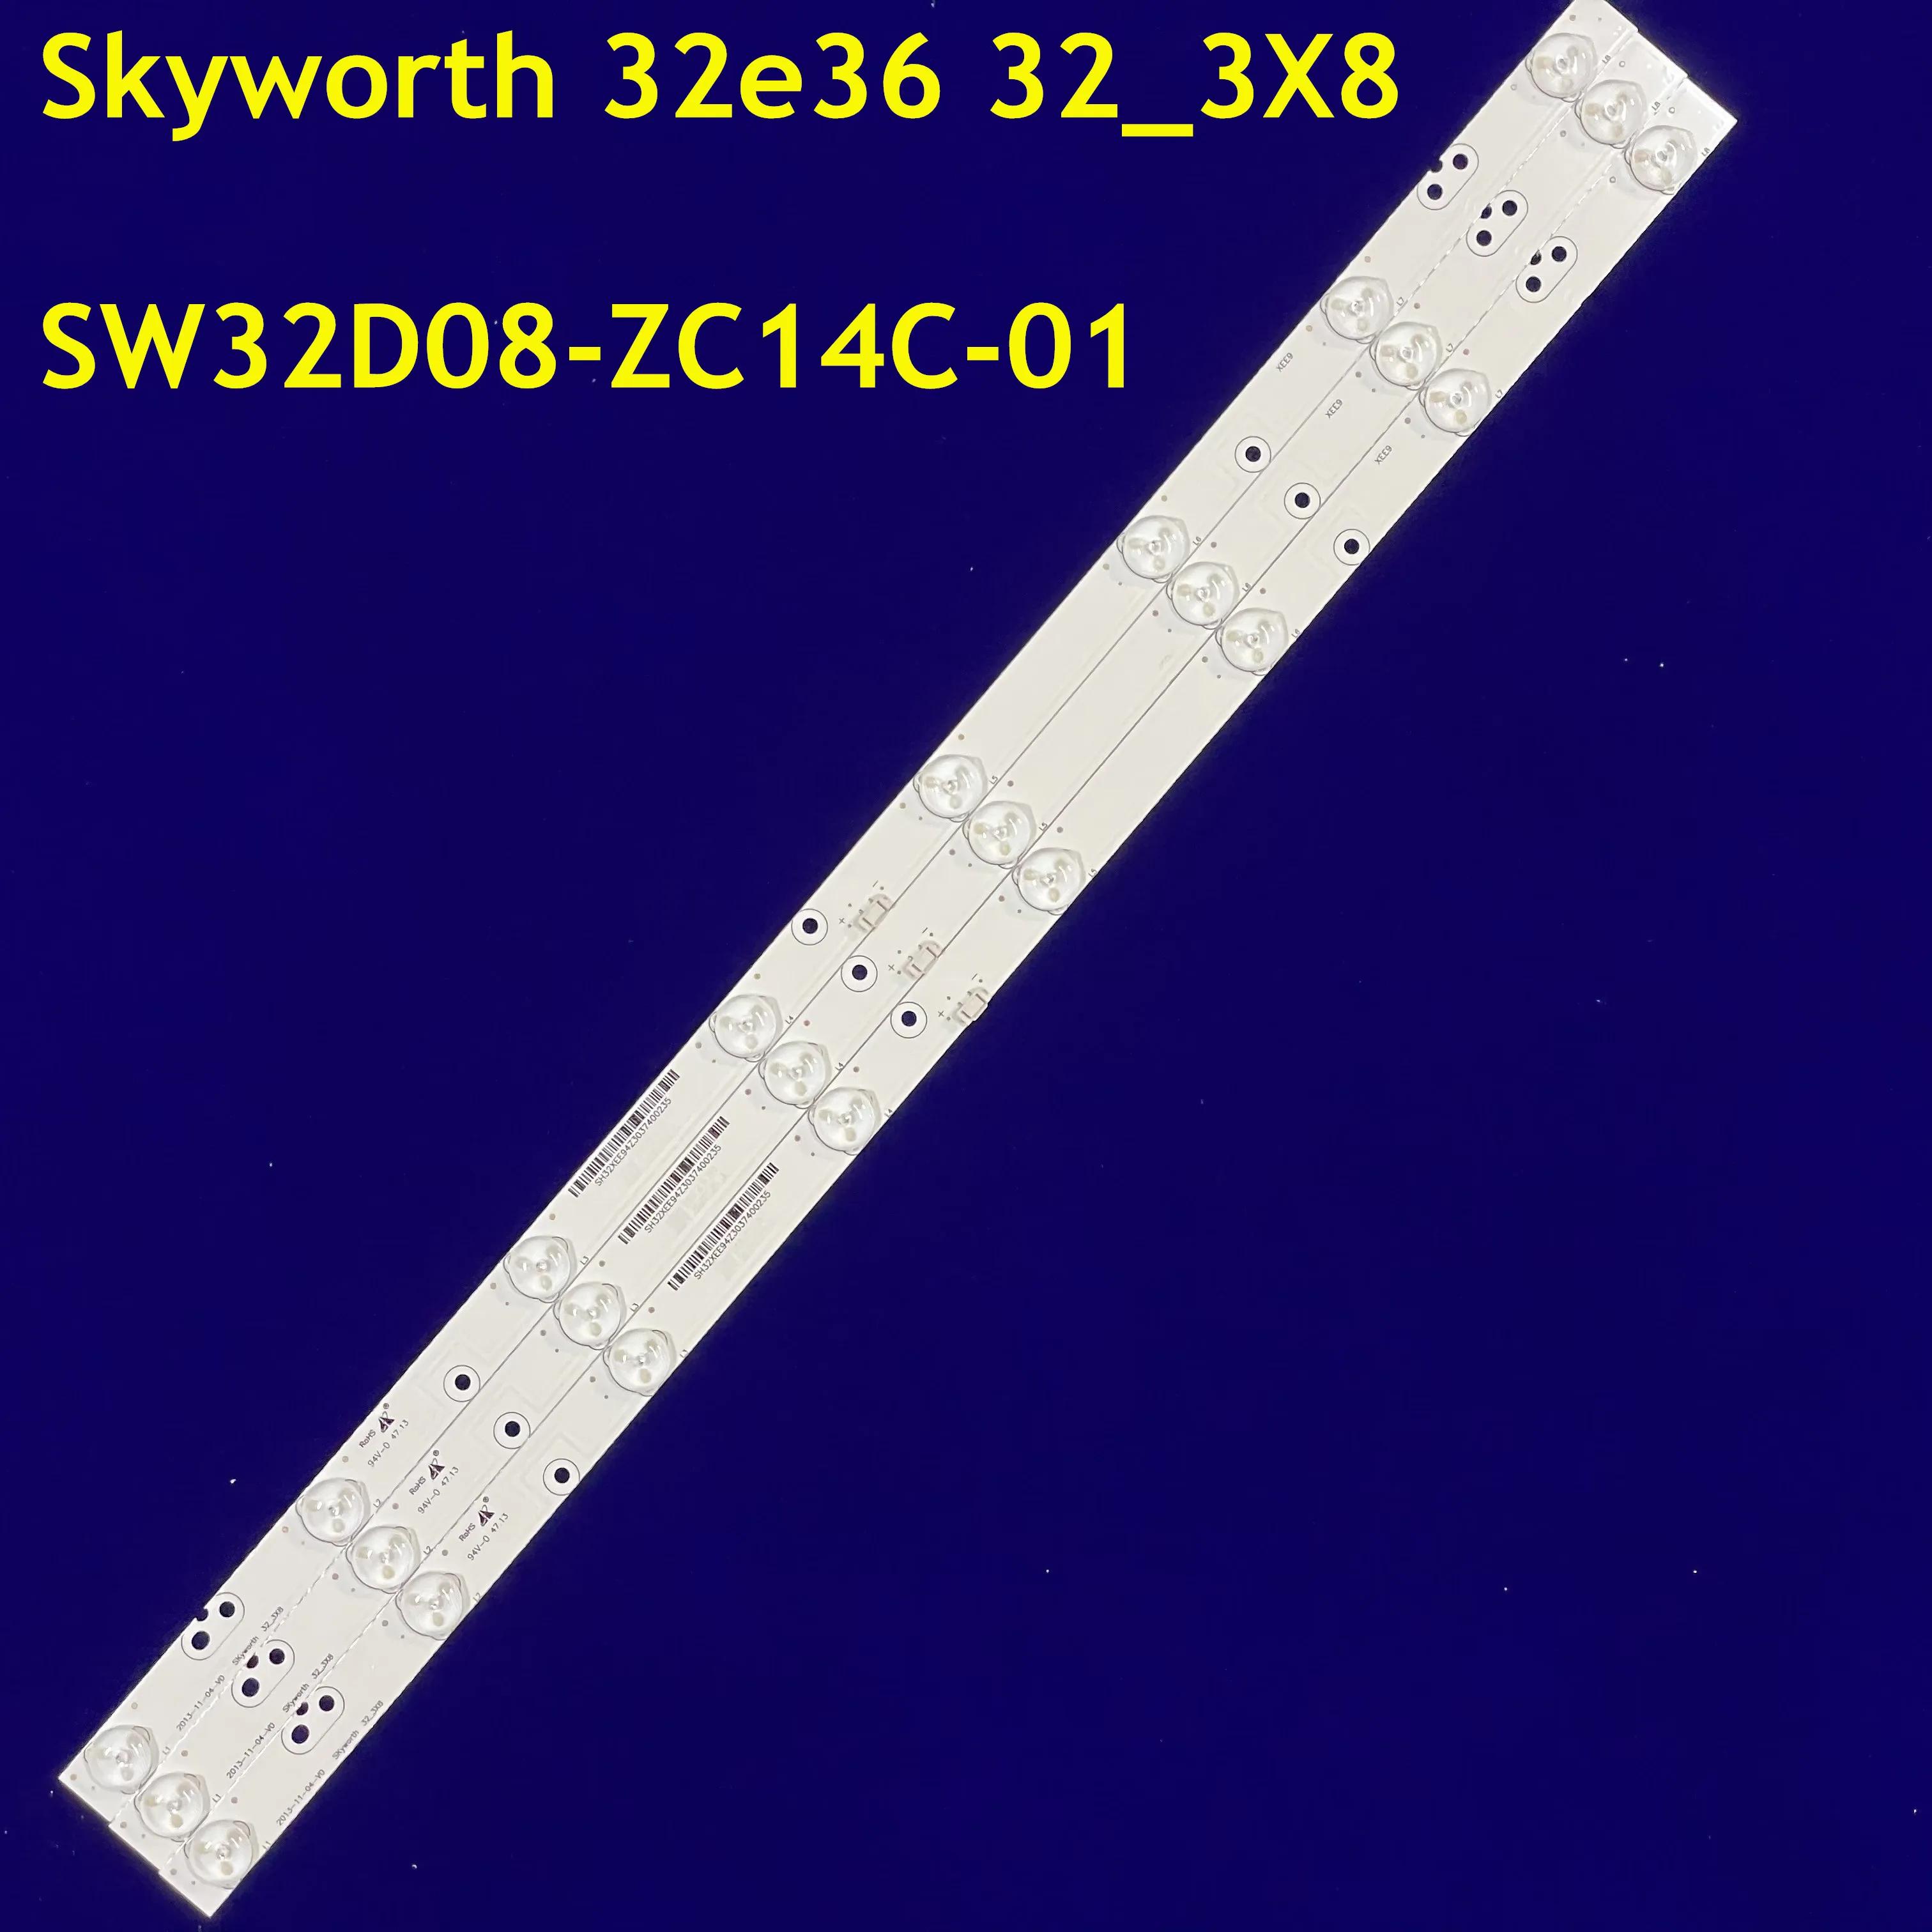 LED Ʈ Ʈ, Dl3277 Dl3277i (a) Skyworth 32e36 32_3X8 SW32D08-ZC14C-01 32E350E 32E360E 32E320W 32E5DHR , 595mm, 90